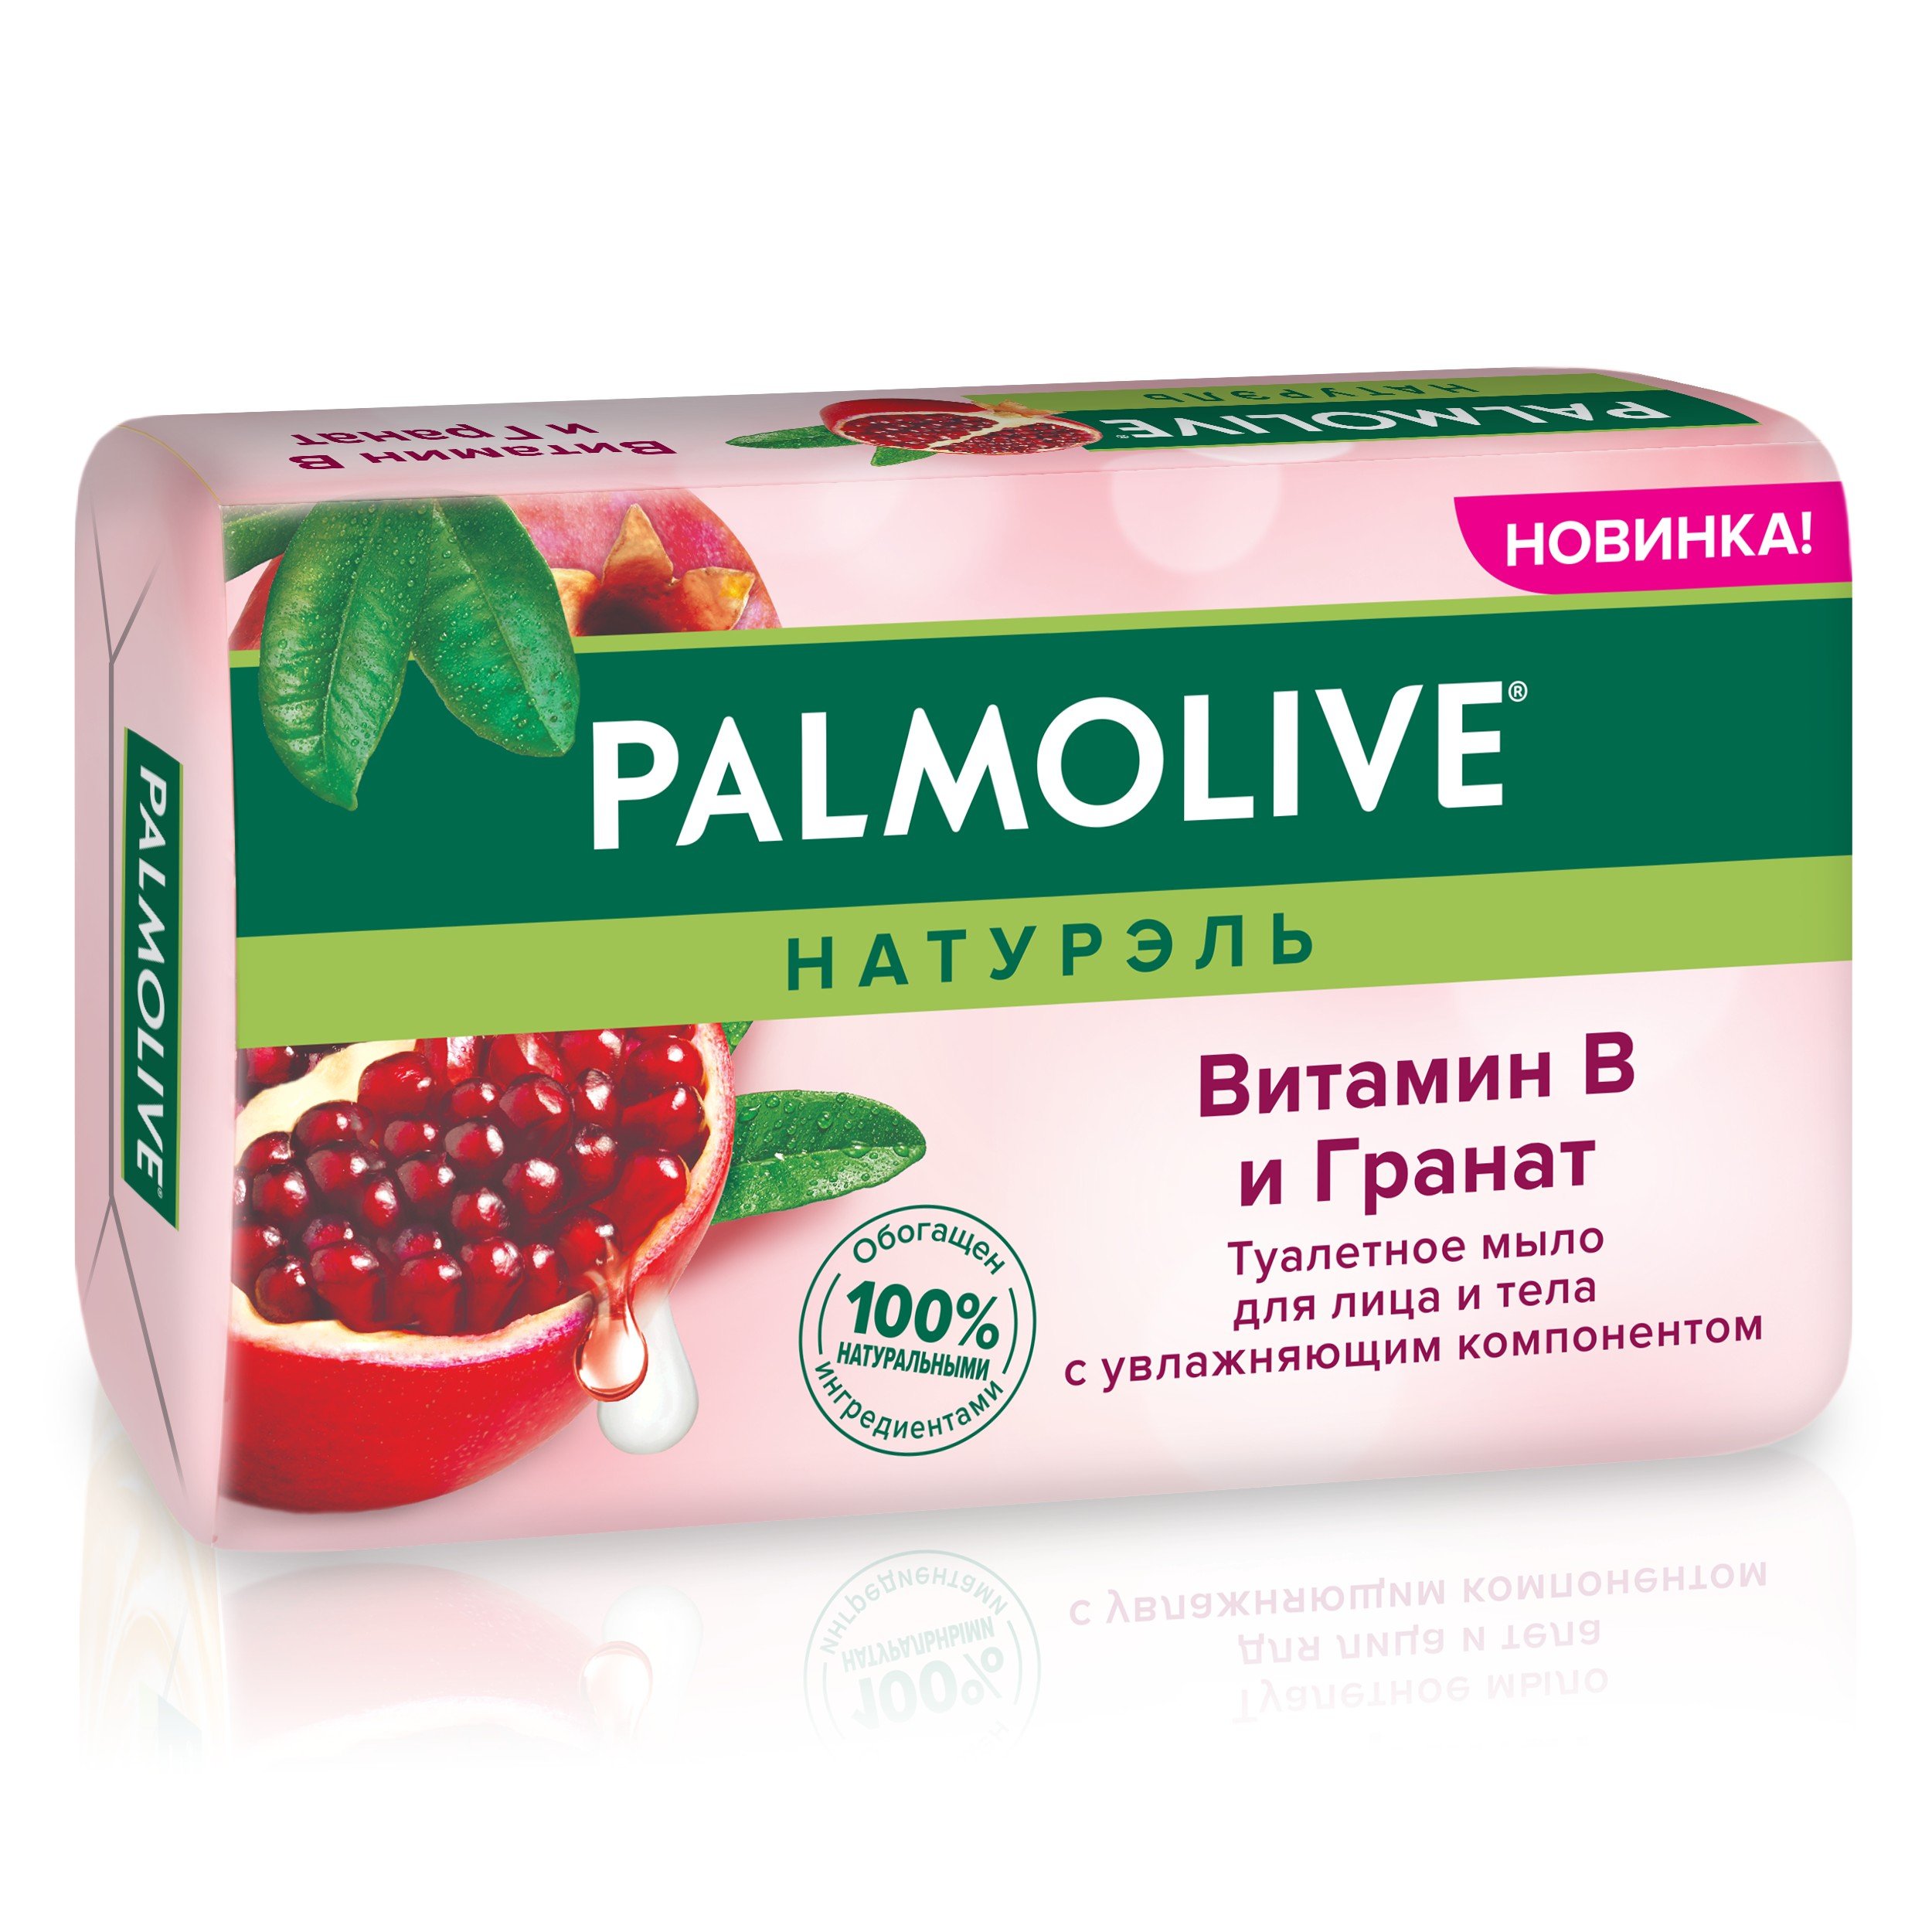 Мыло Palmolive Натурэль Витамин B и Гранат, 150 г - фото 1